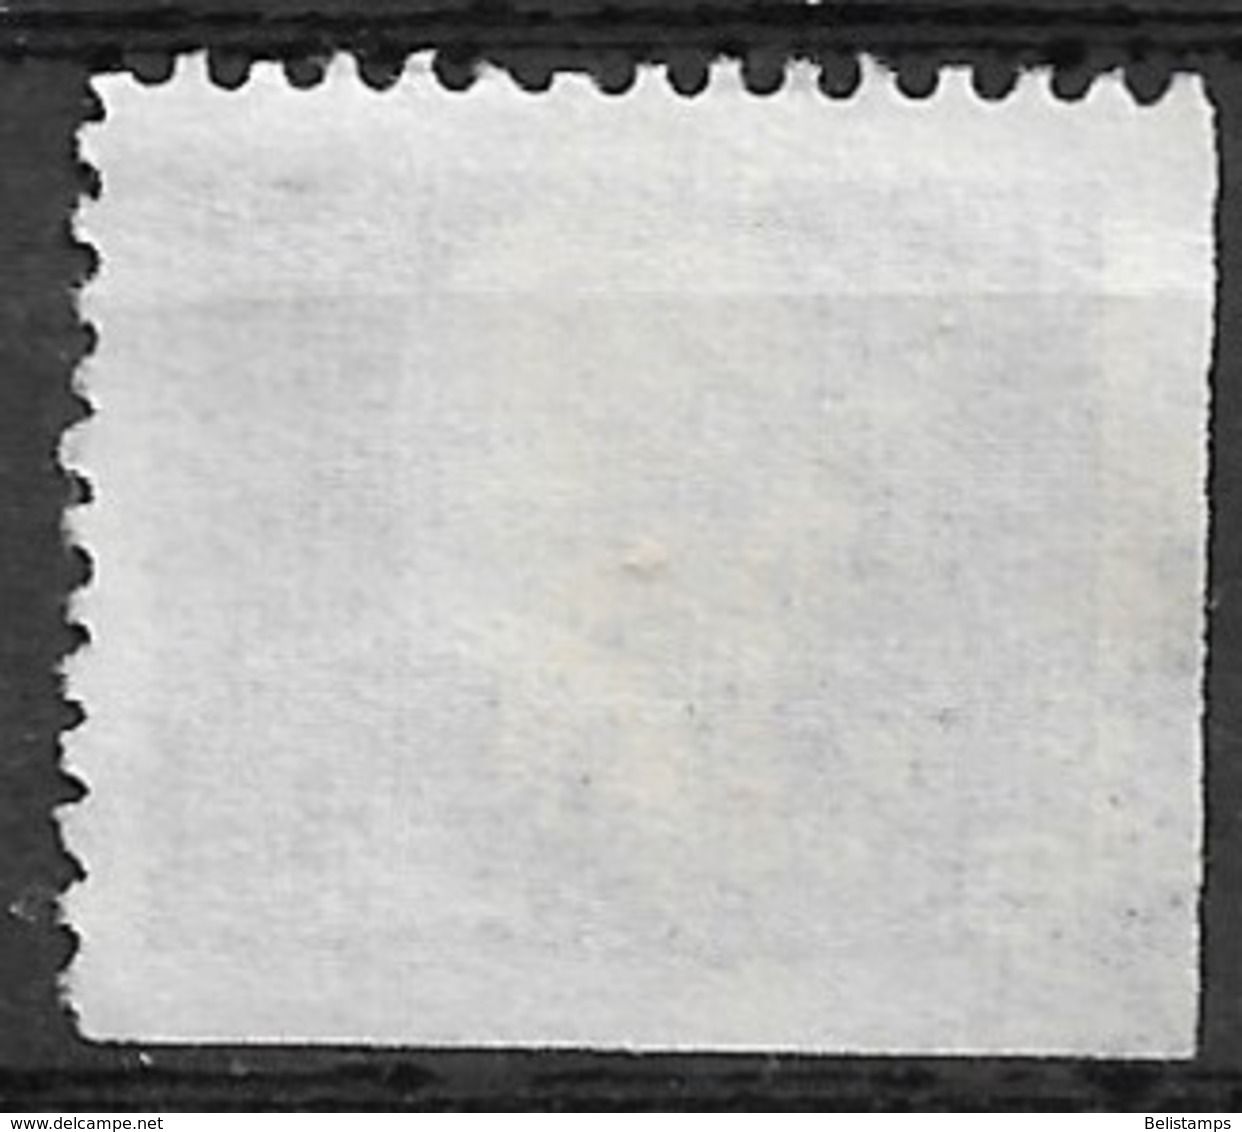 Canada 1963. Scott #405a (U) Queen Elizabeth II And Wheat - Single Stamps